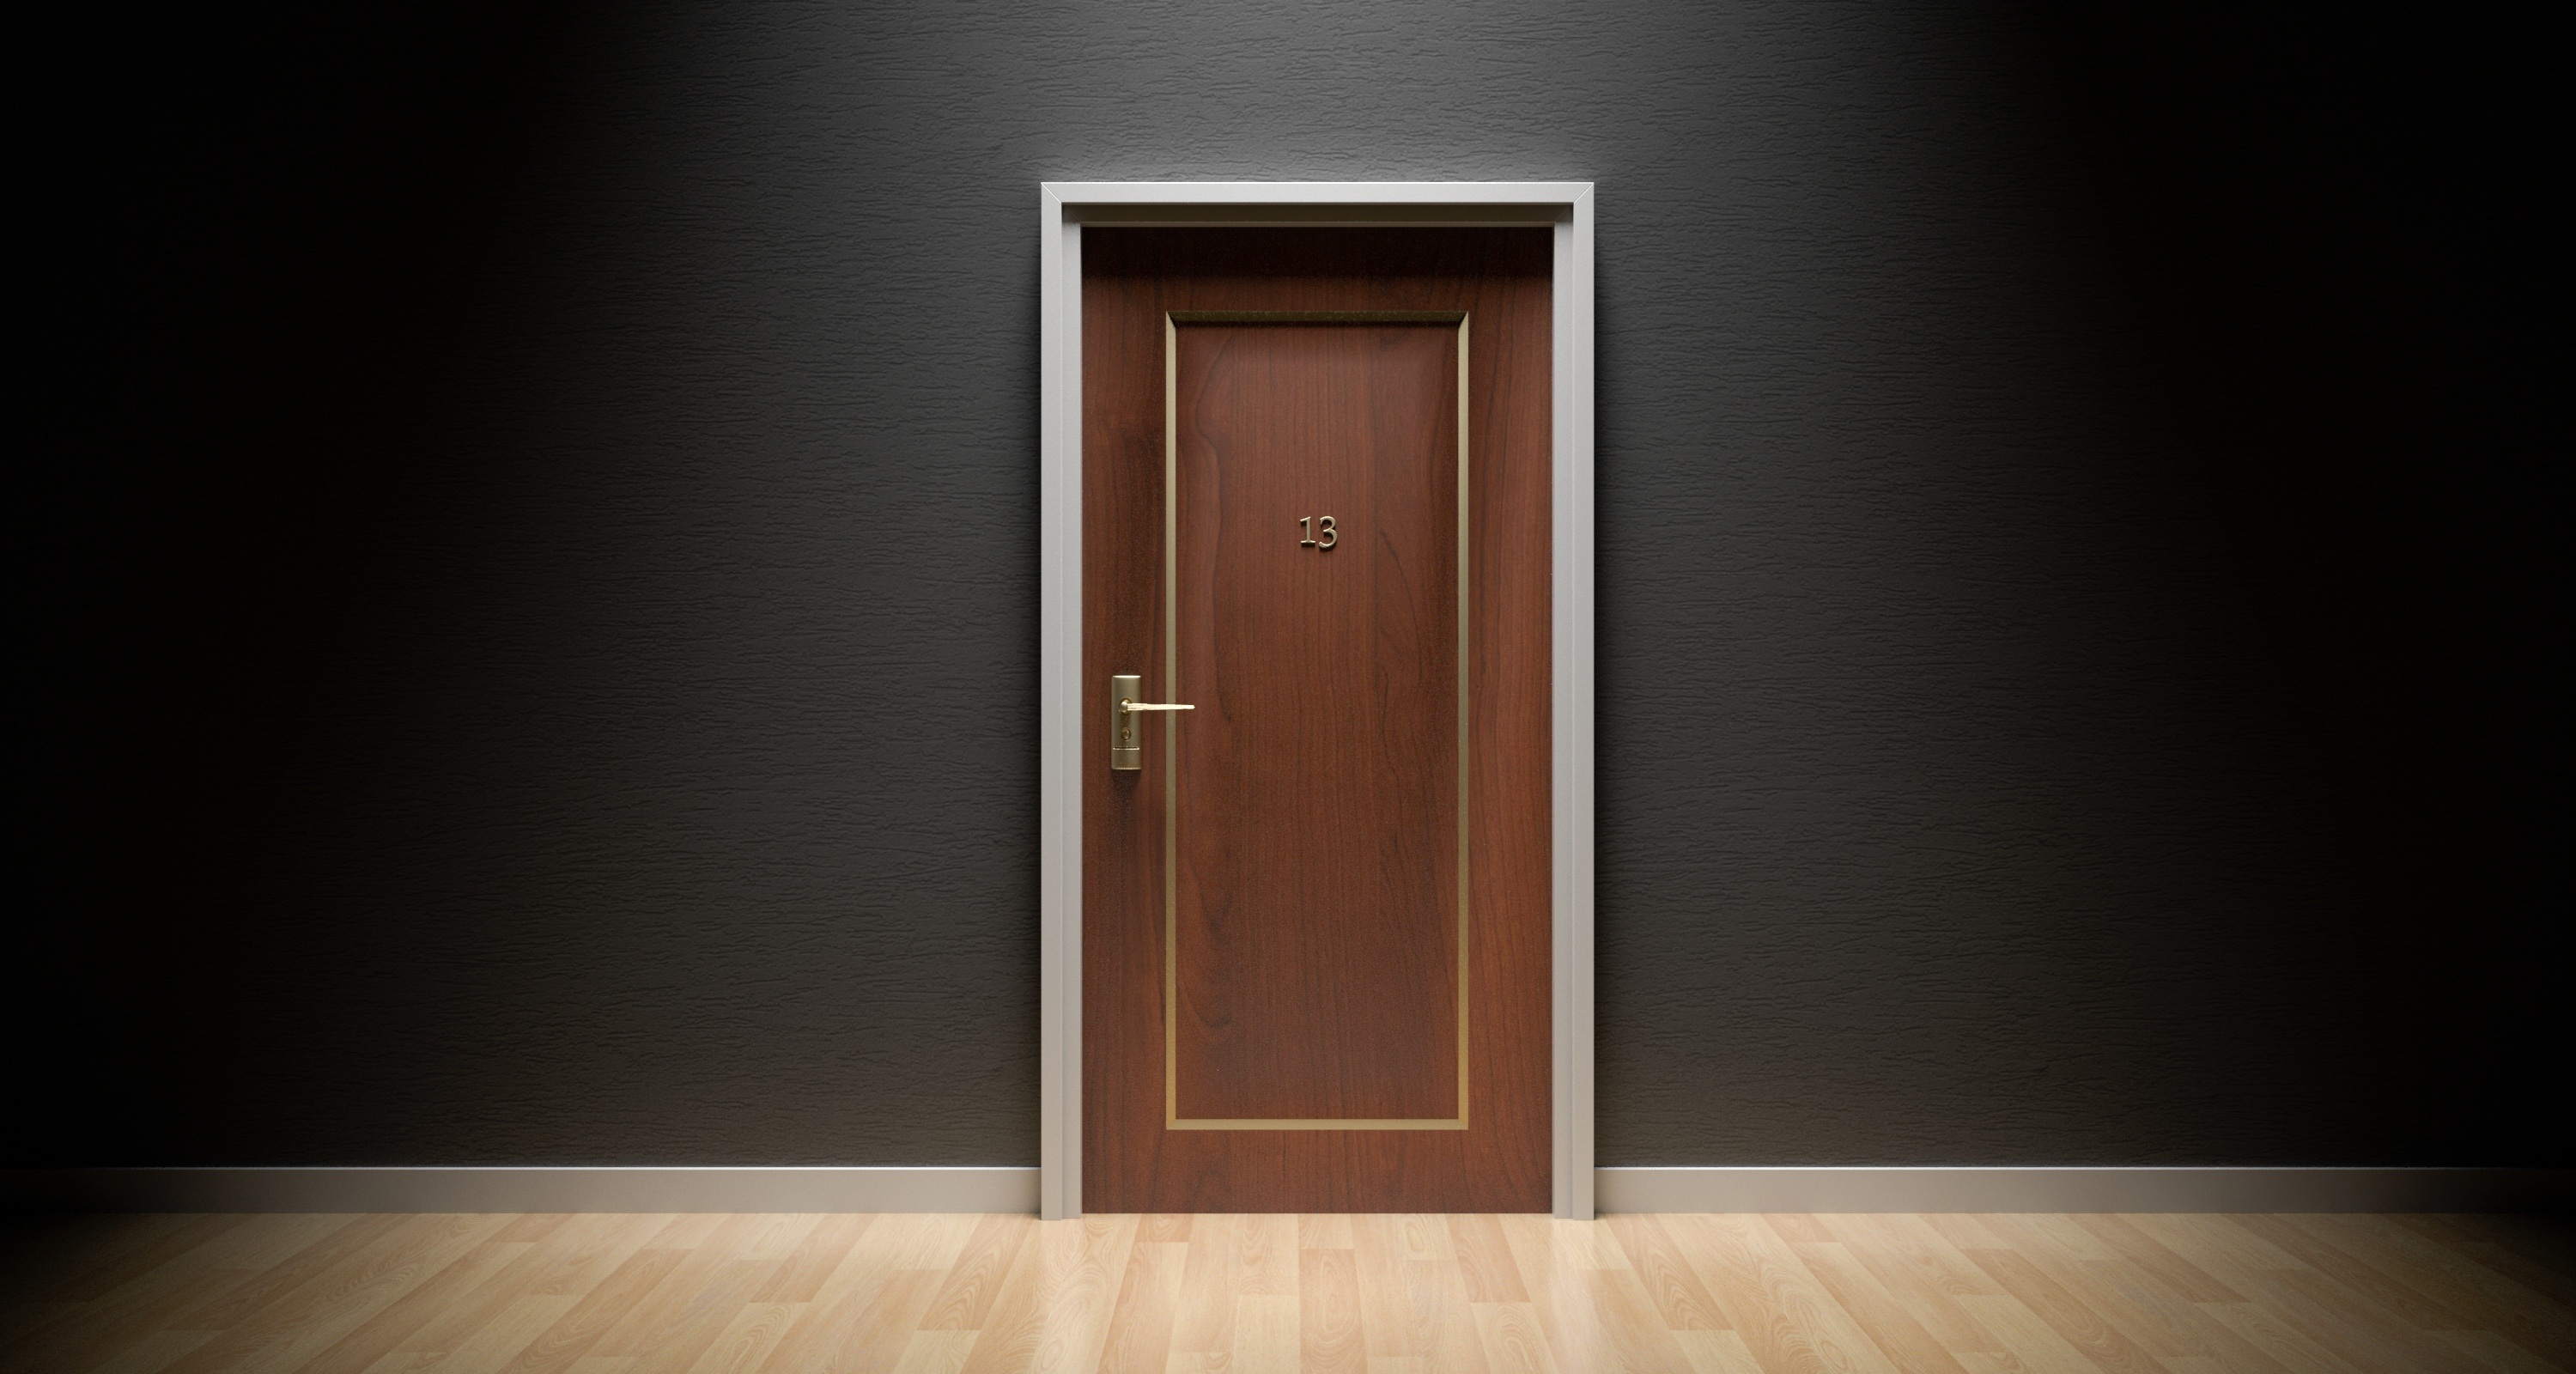 Door Number Thirteen (13) by Arek Socha